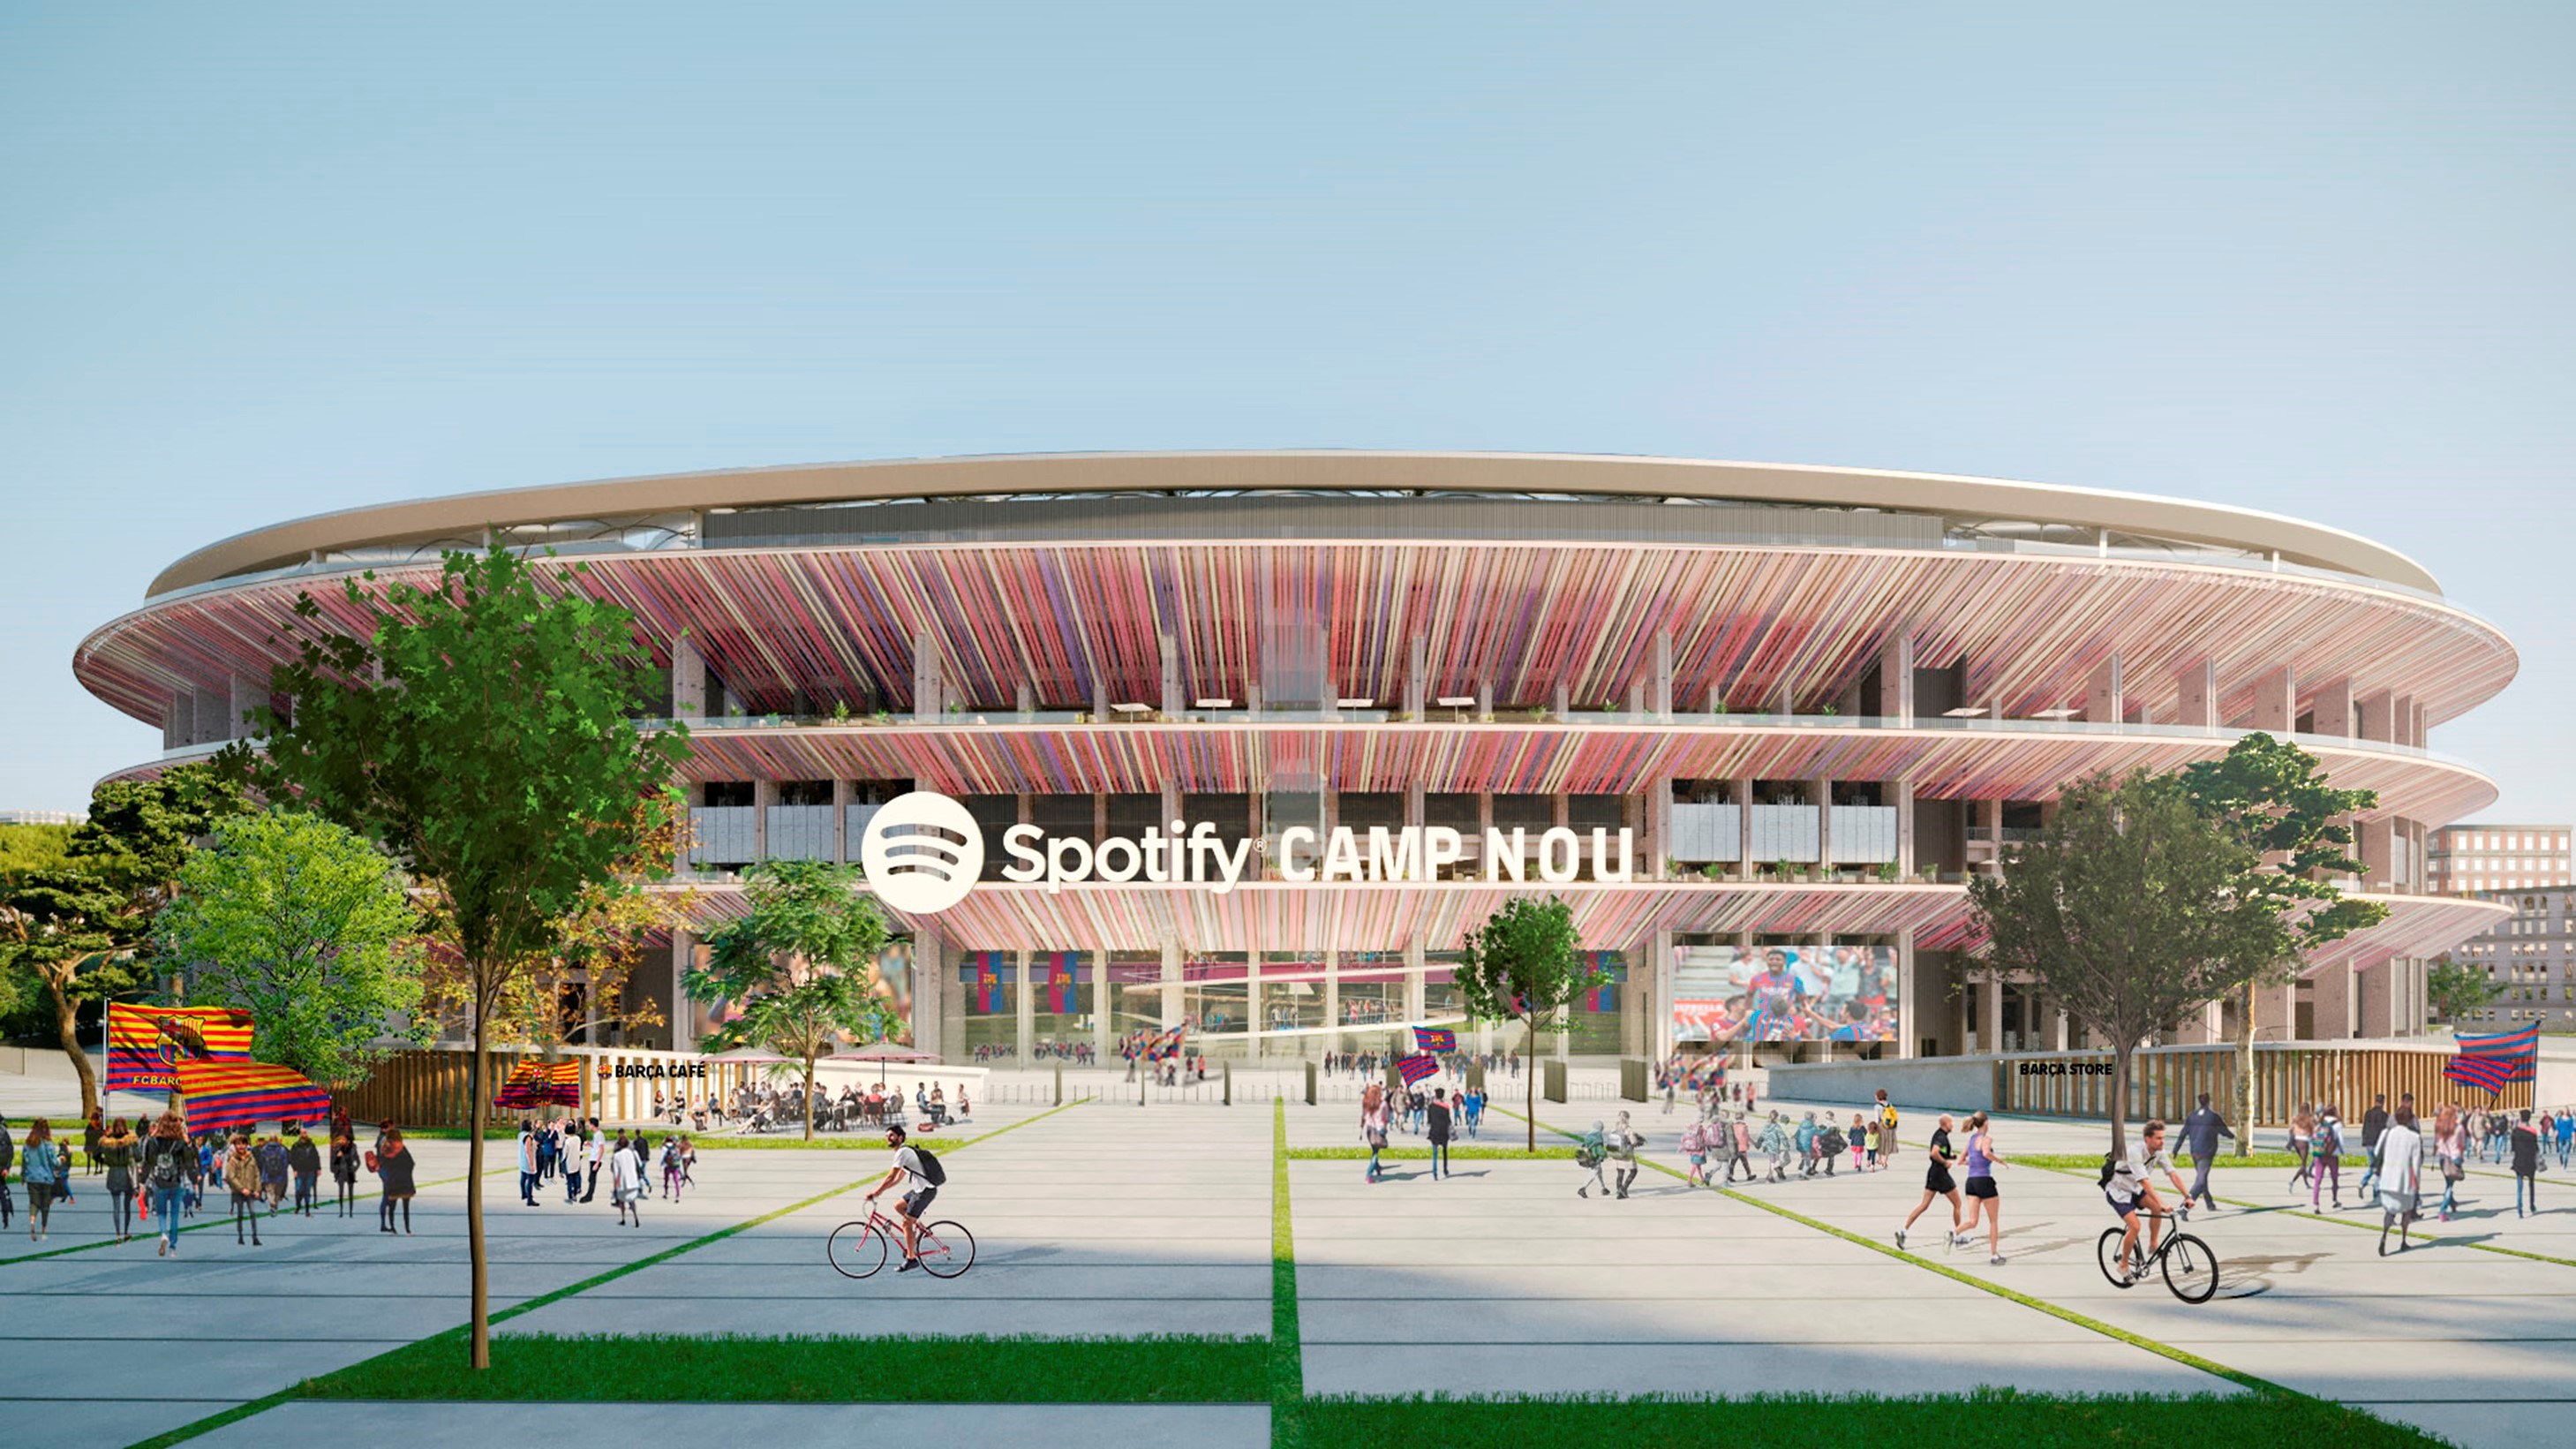 Spotify, Barcelona'nın stadına ve formasına sponsor oldu